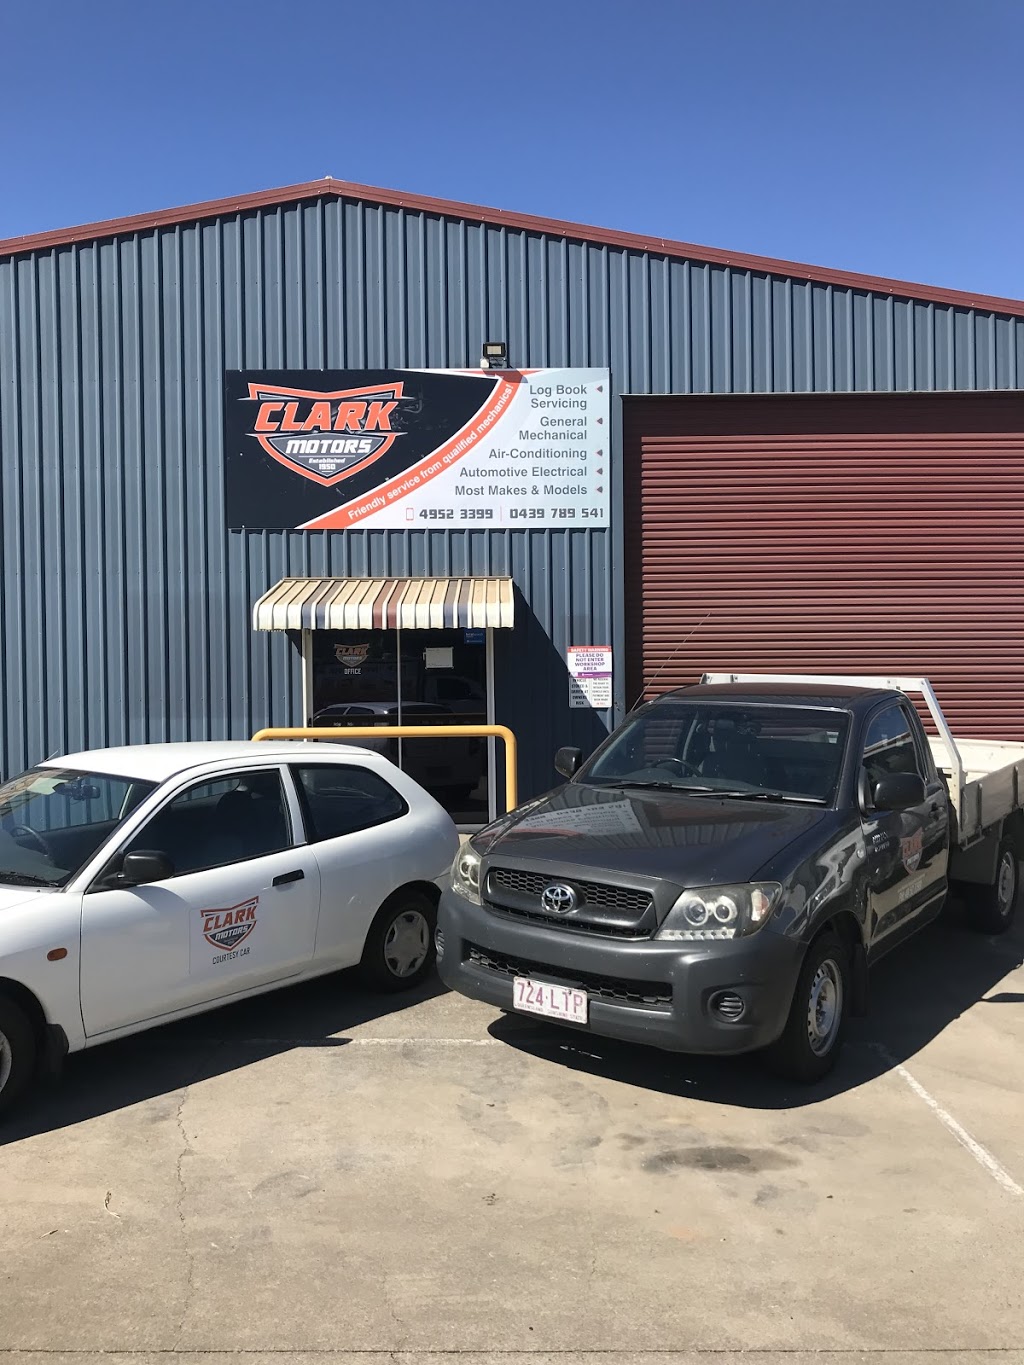 Clark Motors | car repair | 17 Transport Ave, Paget QLD 4740, Australia | 0749523399 OR +61 7 4952 3399